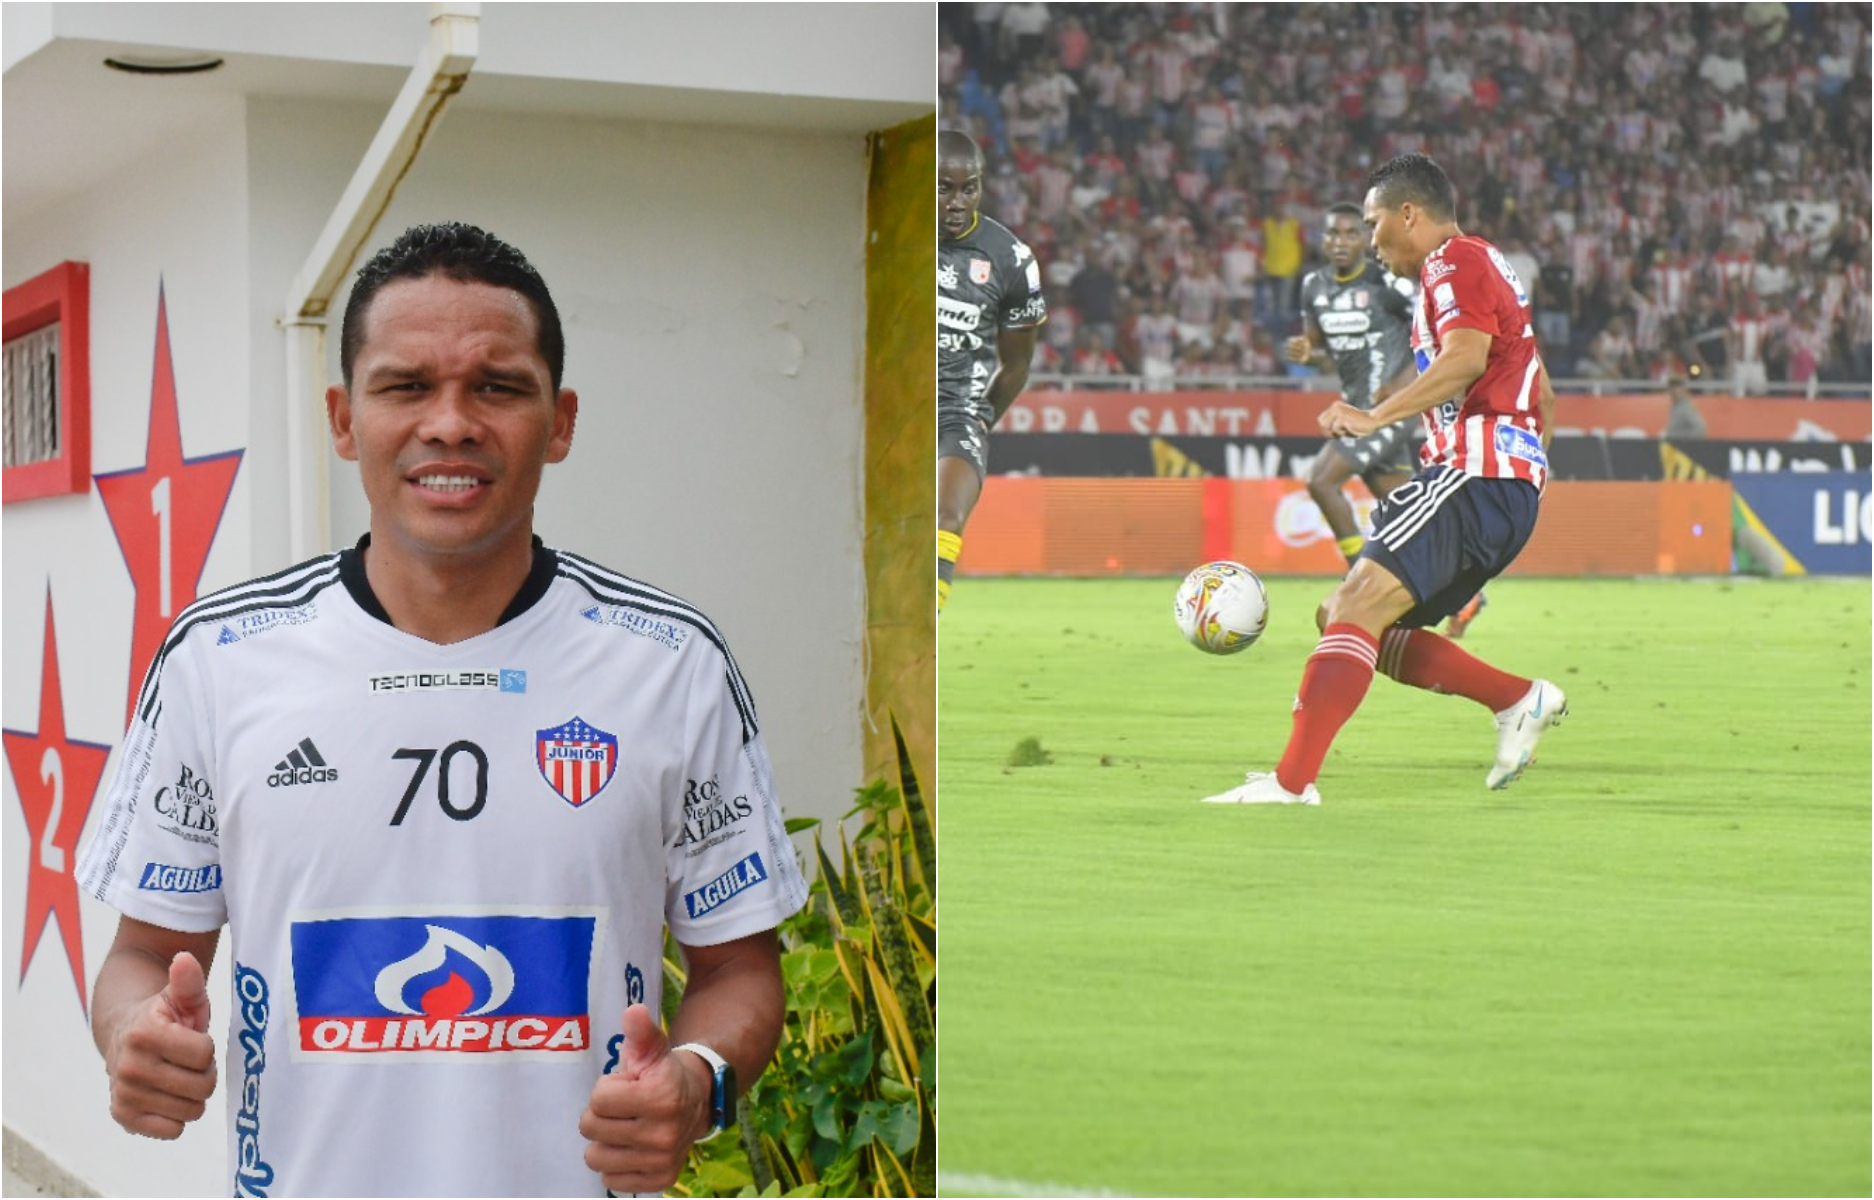 Carlos Arturo Bacca Ahumada disfruta cada instante de su vuelta a Junior como si fuera la primera vez que jugara en el equipo de sus amores. 